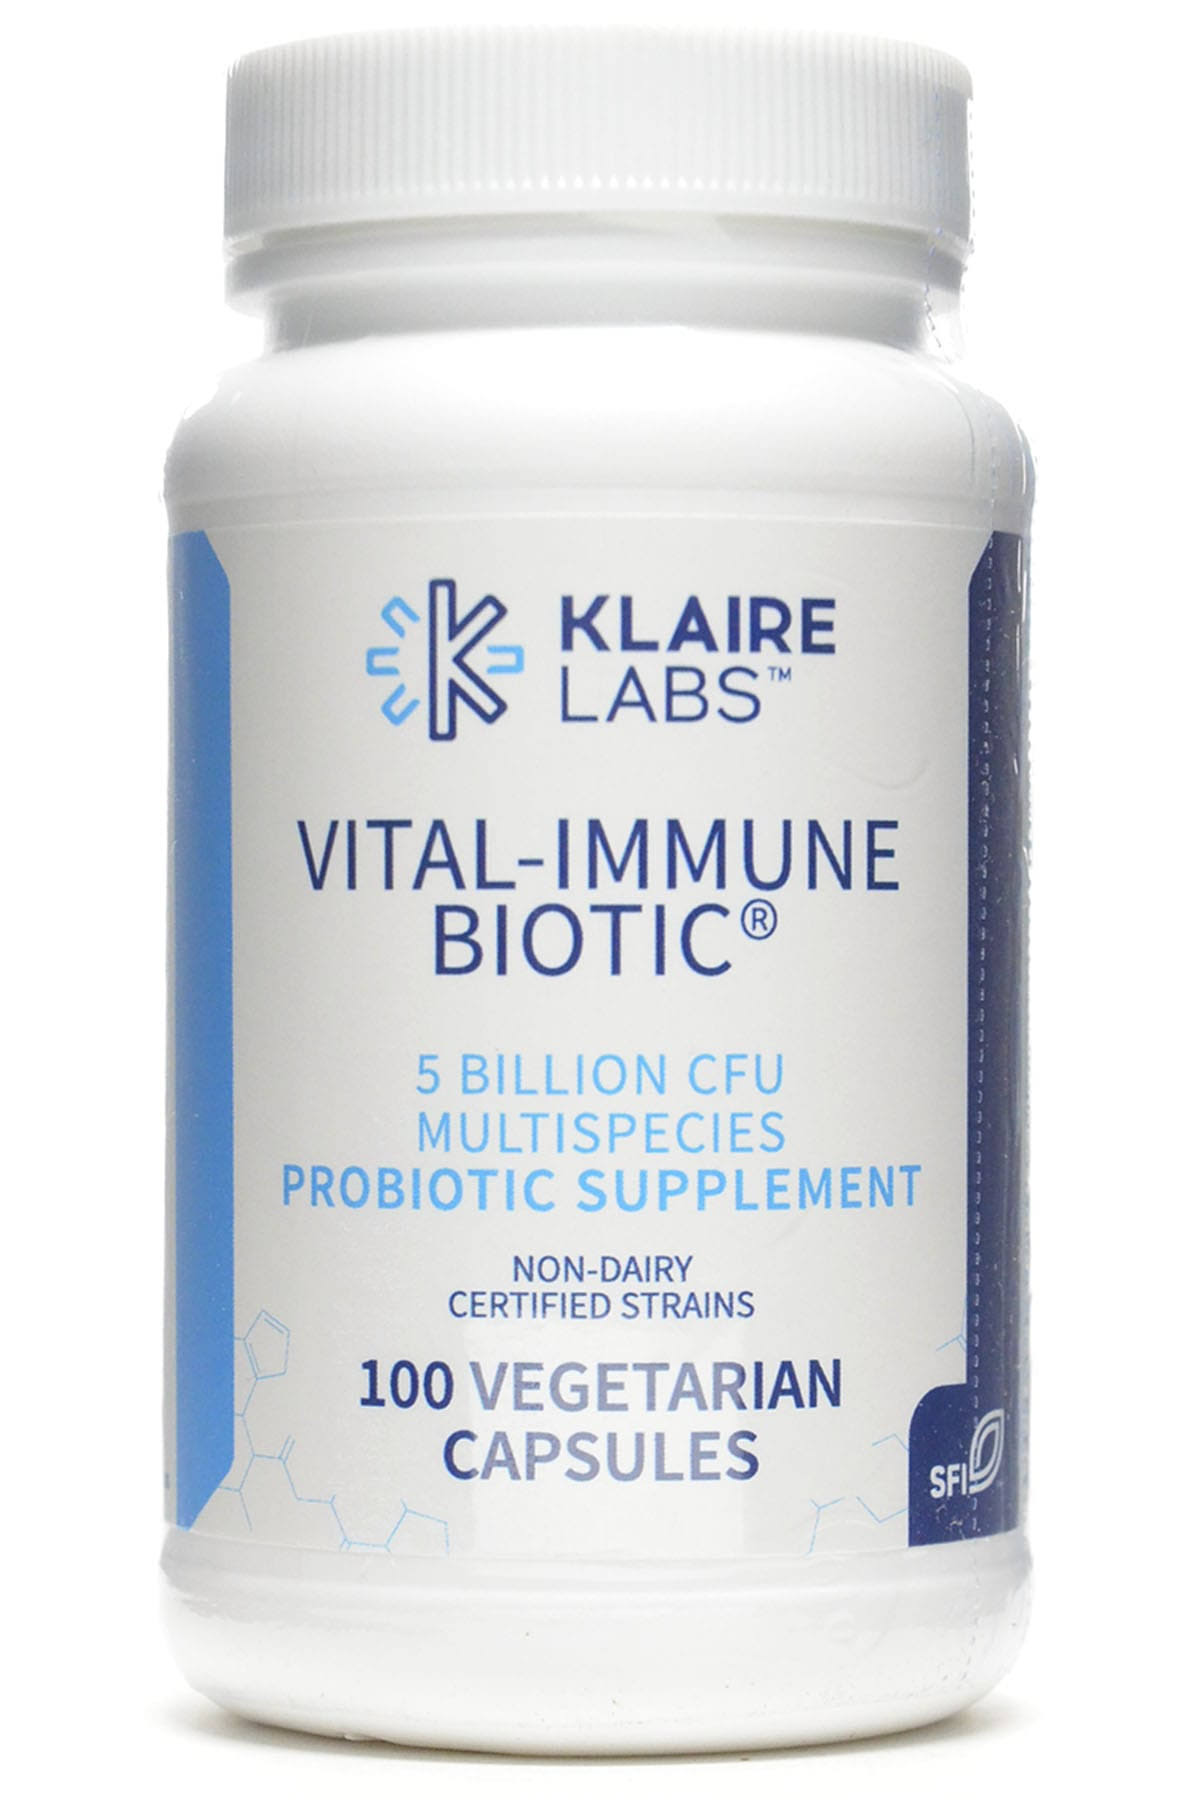 Klaire Labs Vital-Immune Biotic - Immune System Support Probiotic 5 Bi